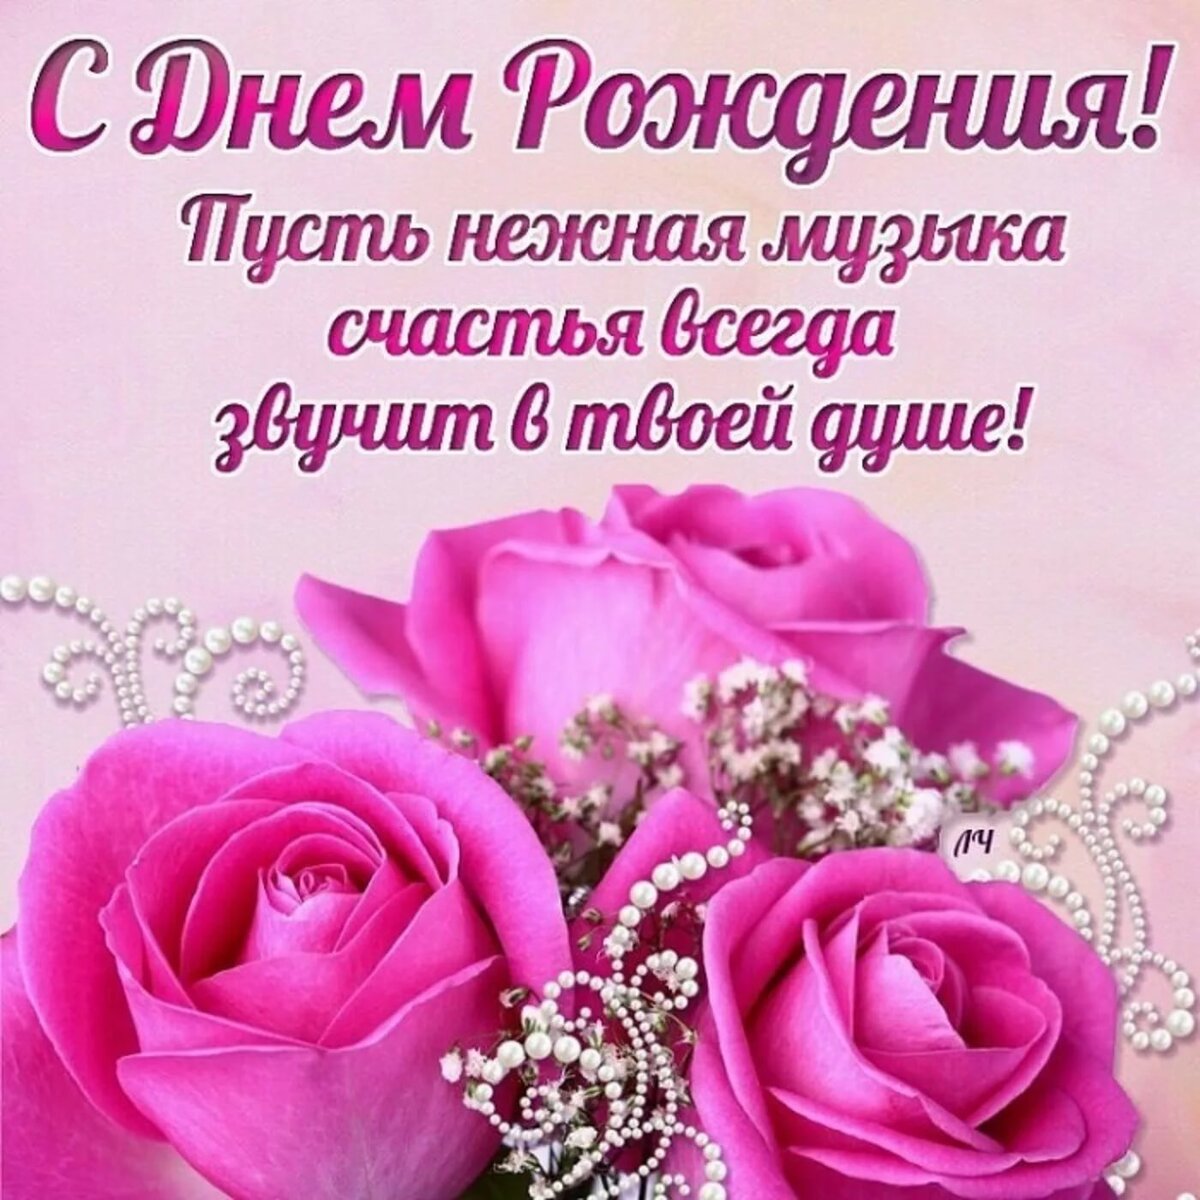 Поздравления с днем рождения женщине | pzdb.ru - поздравления на все случаи жизни